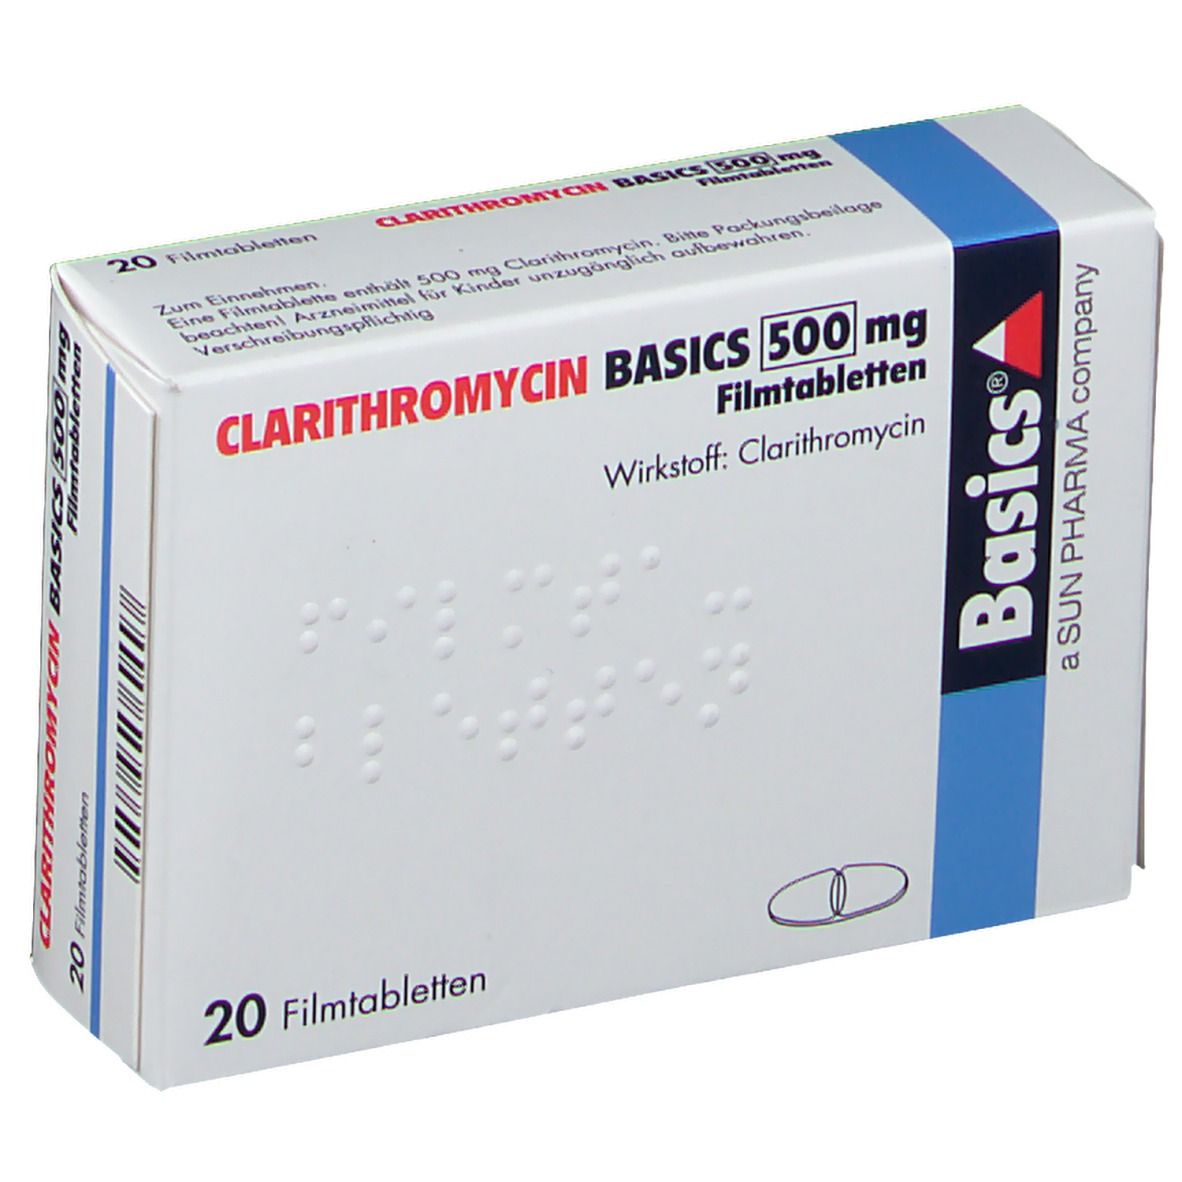 CLARITHROMYCIN BASICS 500 mg